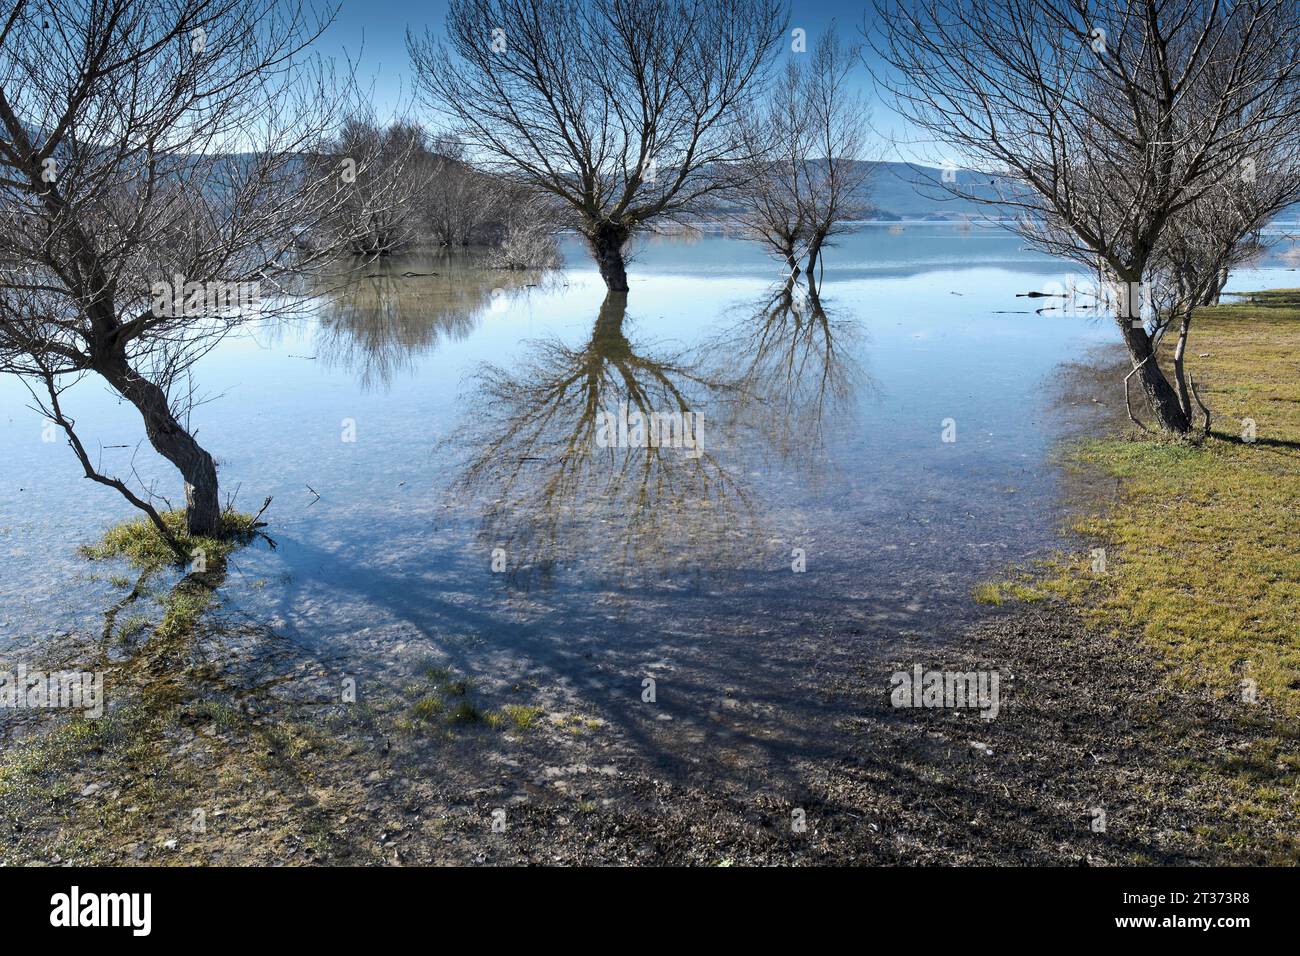 Les arbres et leur reflet sur la rive d'un lac inondé. Banque D'Images